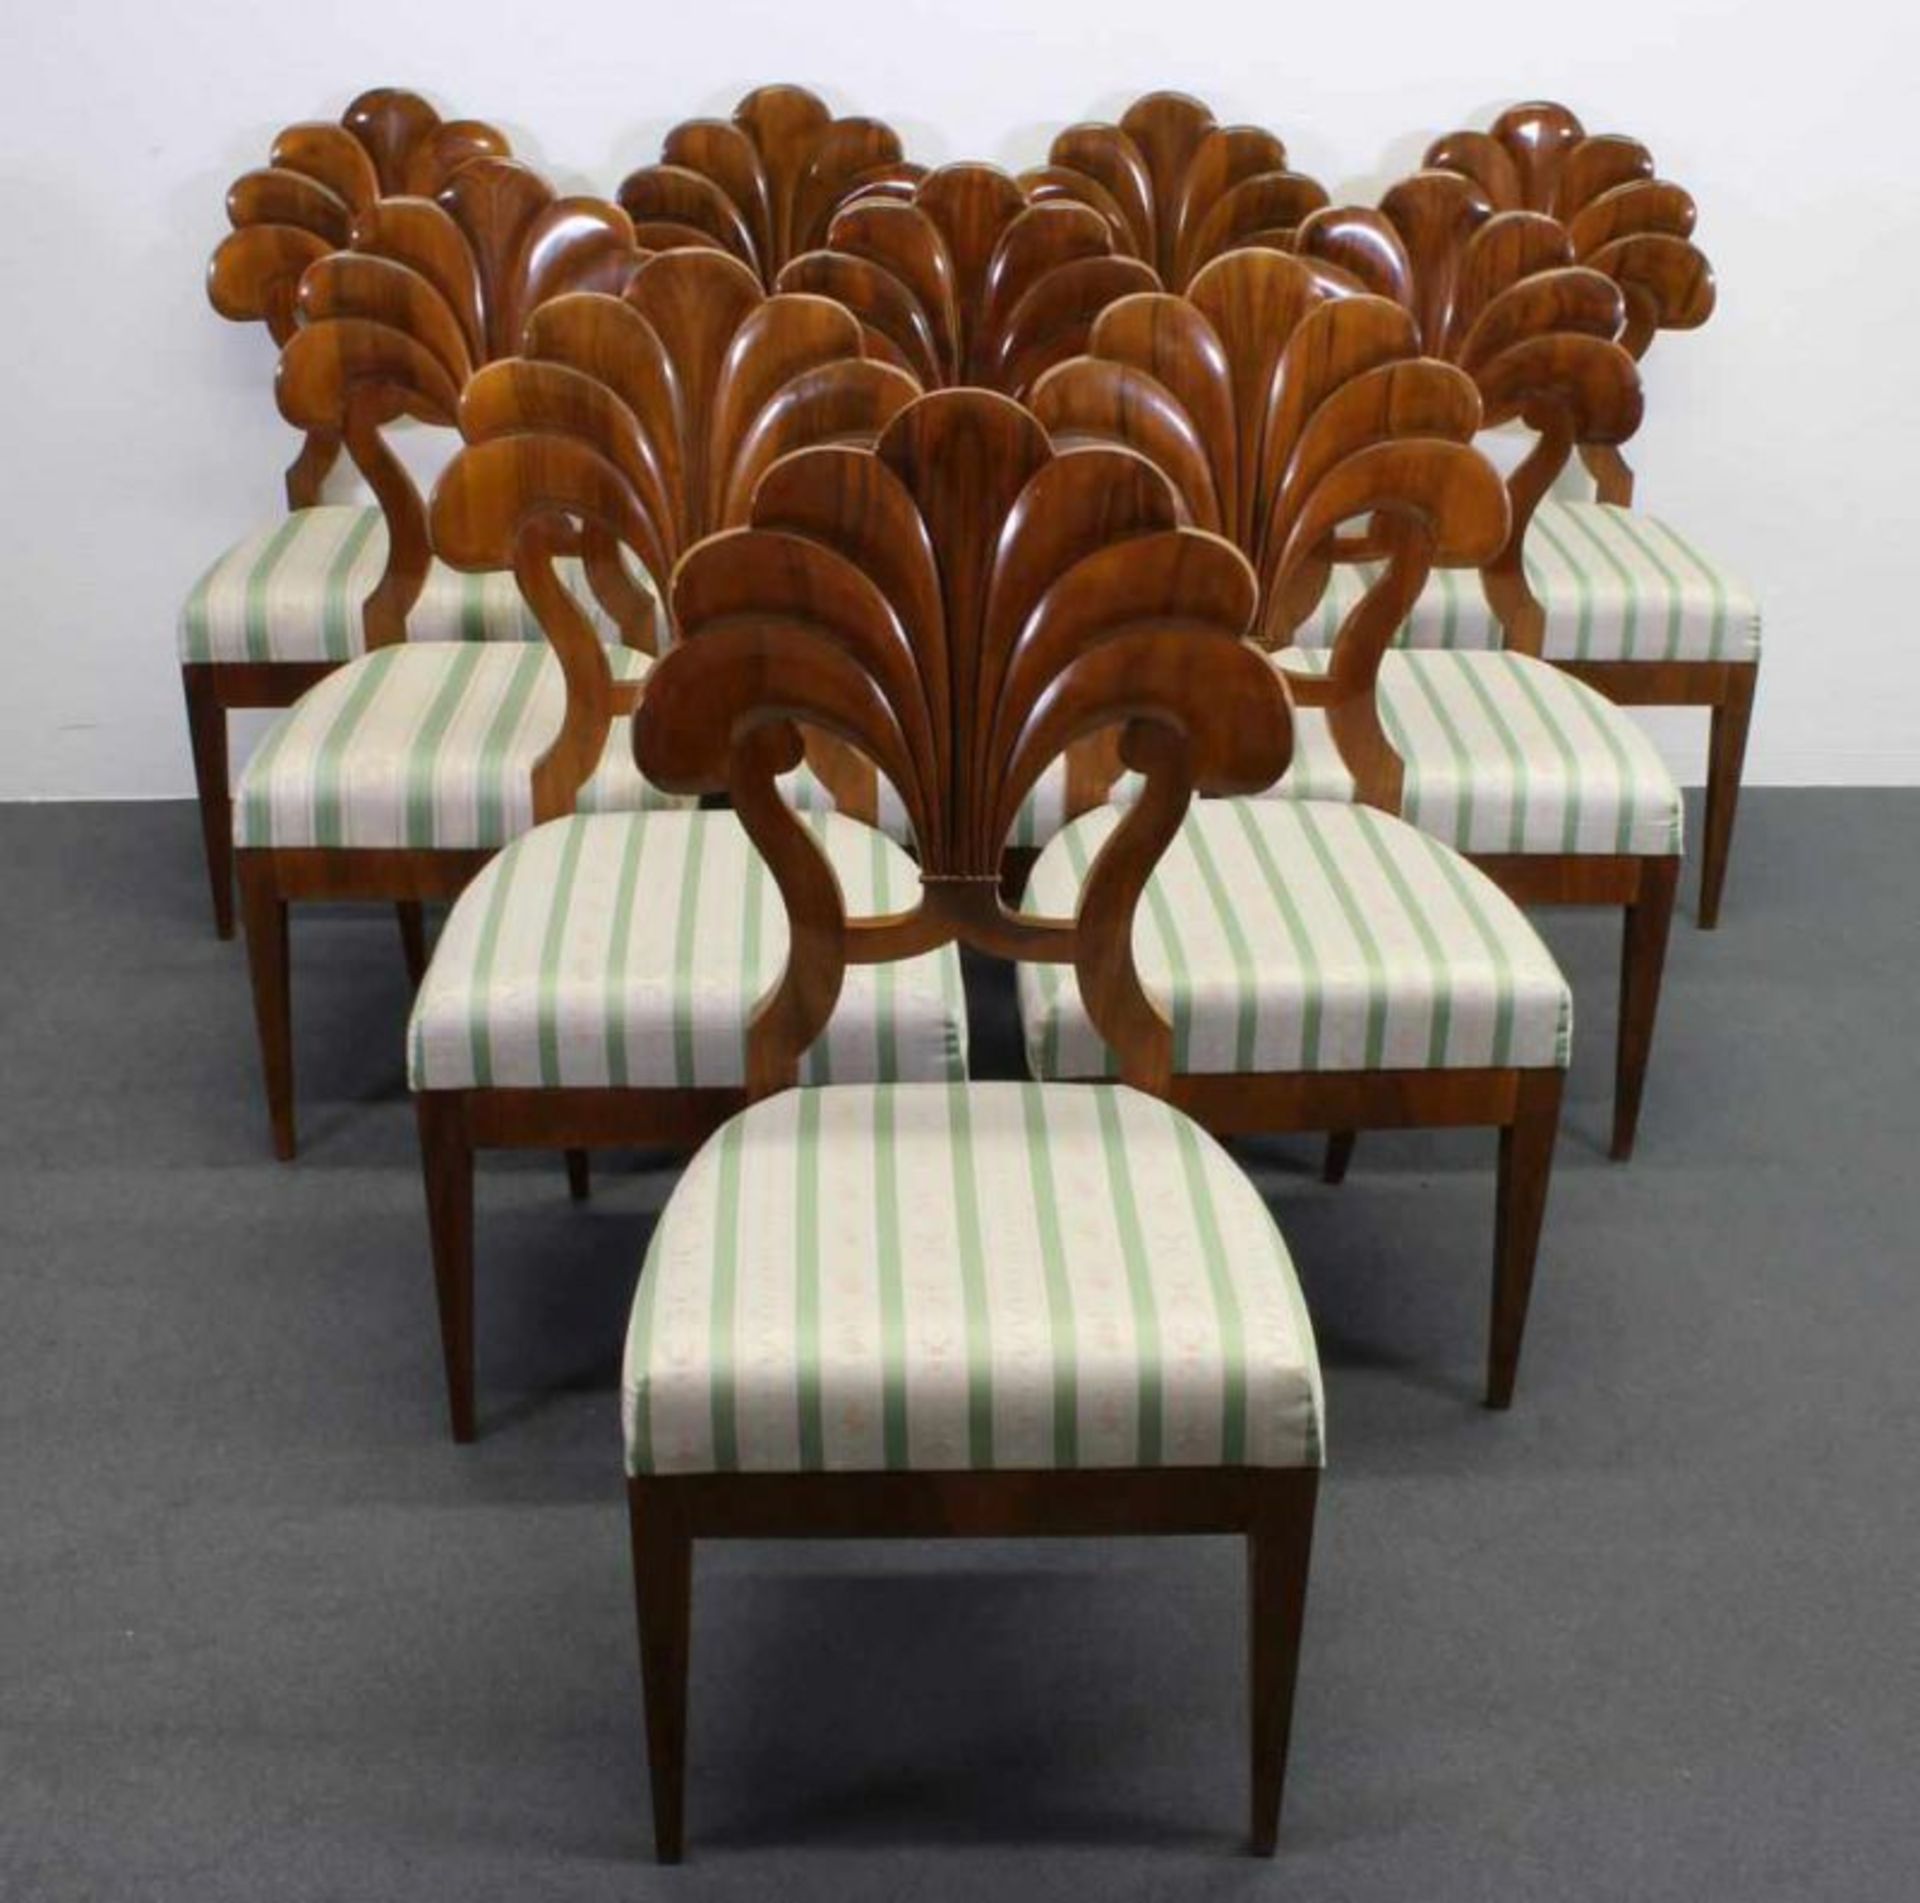 10 Stühle, Wiener Biedermeier-Stil, 20. Jh., in der Art von Josef Danhauser, Nussholz, Sitzpolster